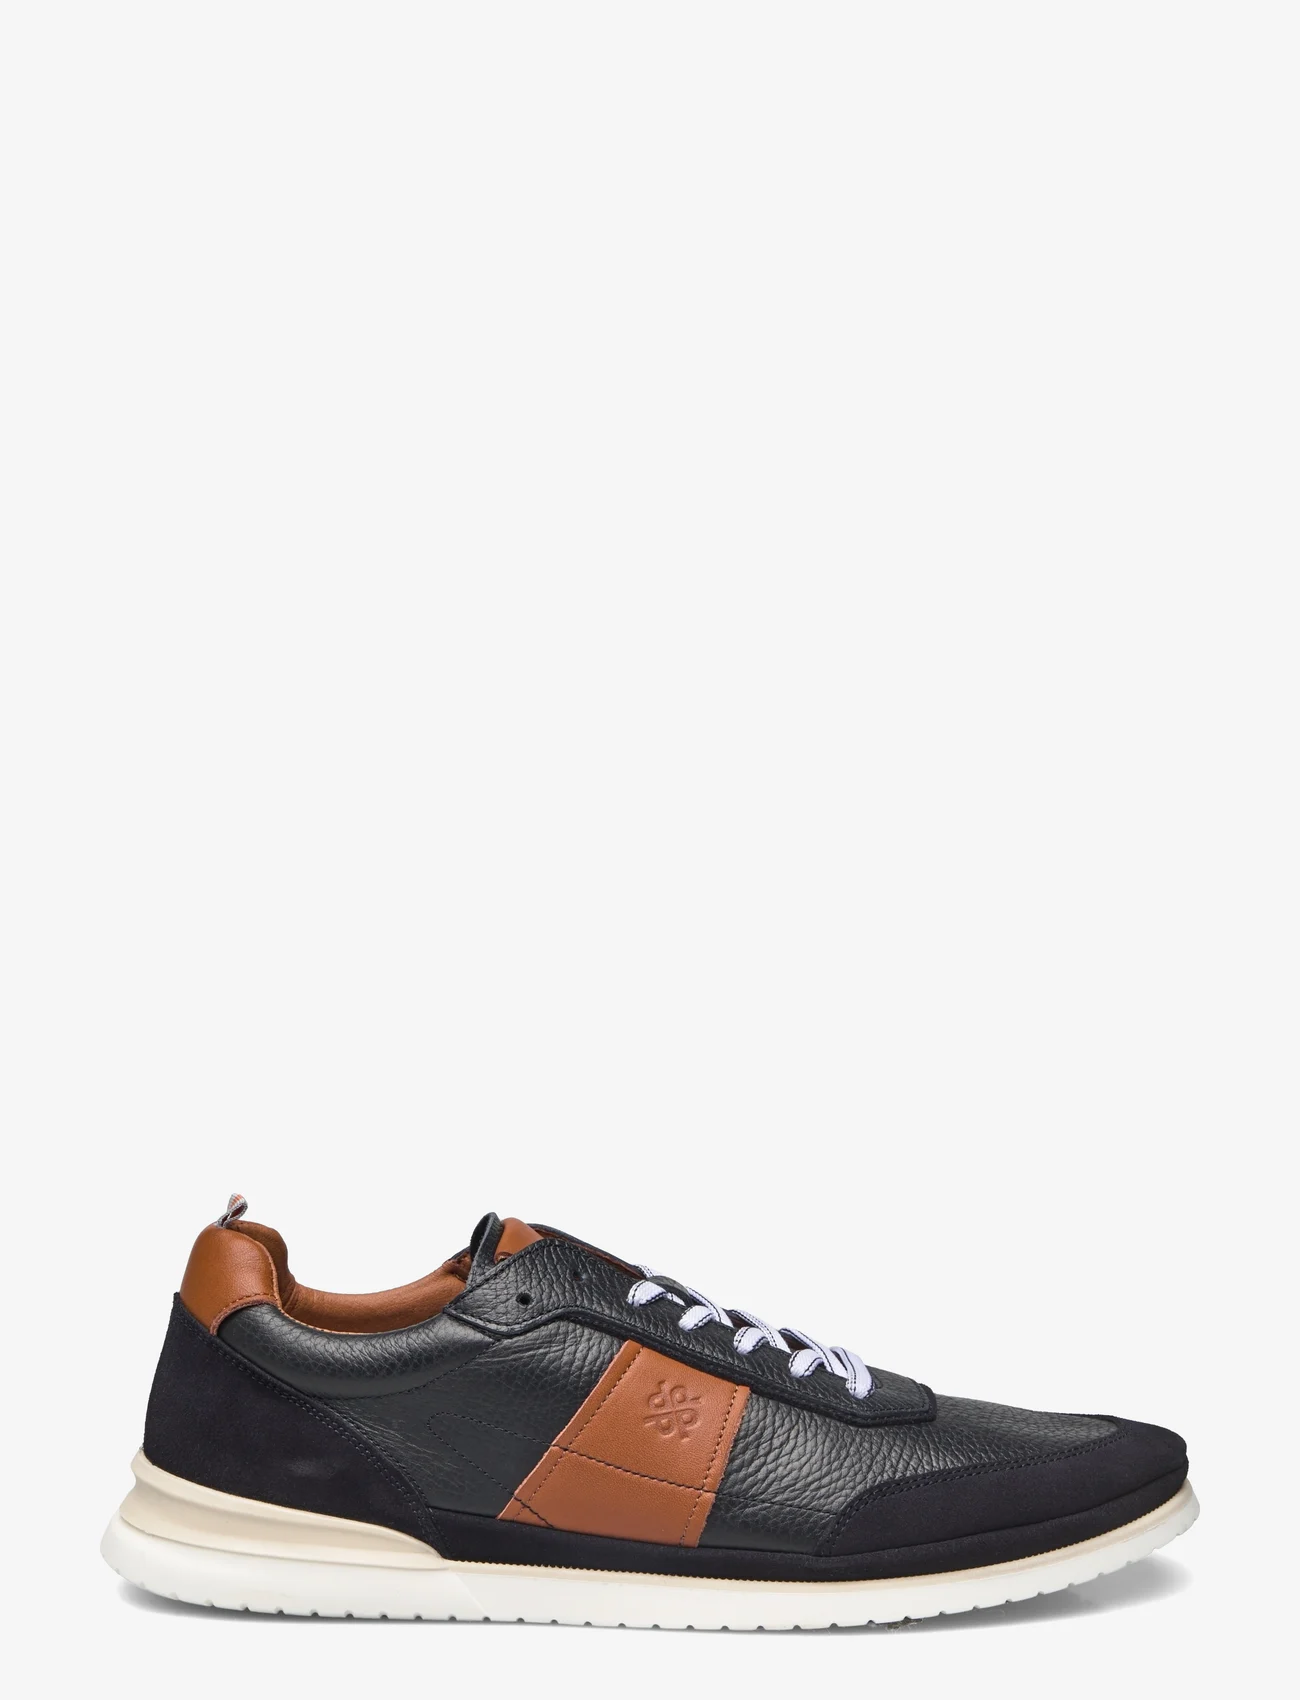 Playboy Footwear - Dan - laag sneakers - navy leather/suede combi - 1